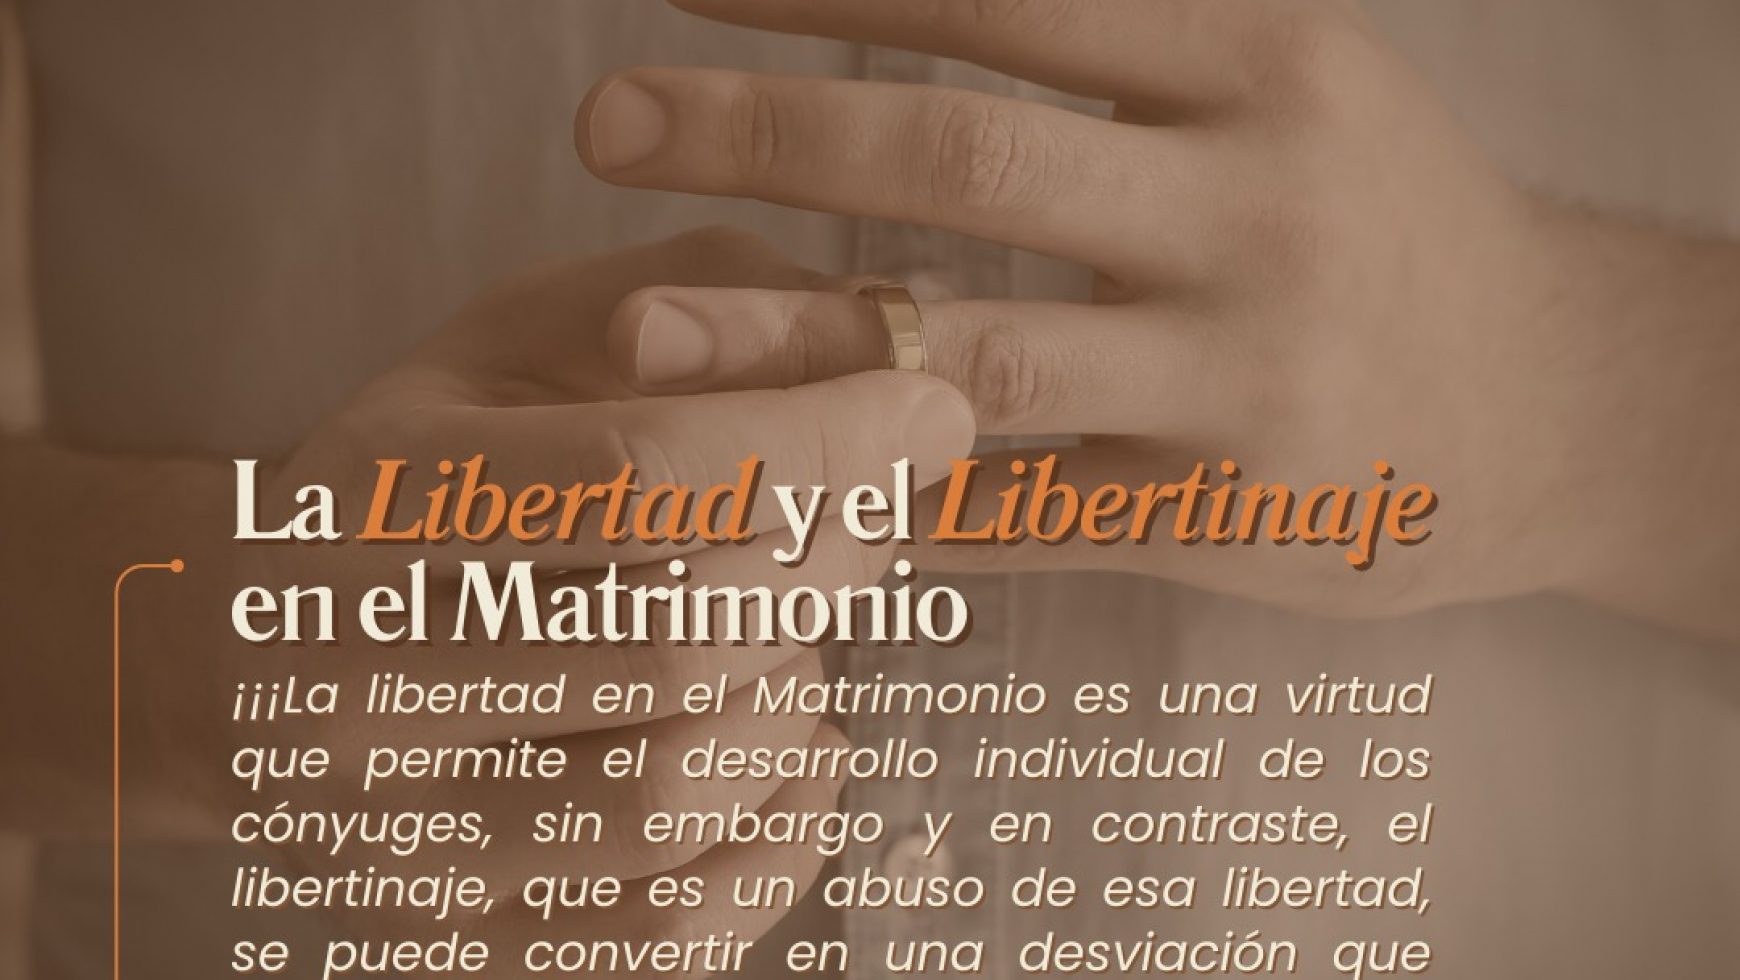 ⚤ LA LIBERTAD Y EL LIBERTINAJE EN EL MATRIMONIO ⚤